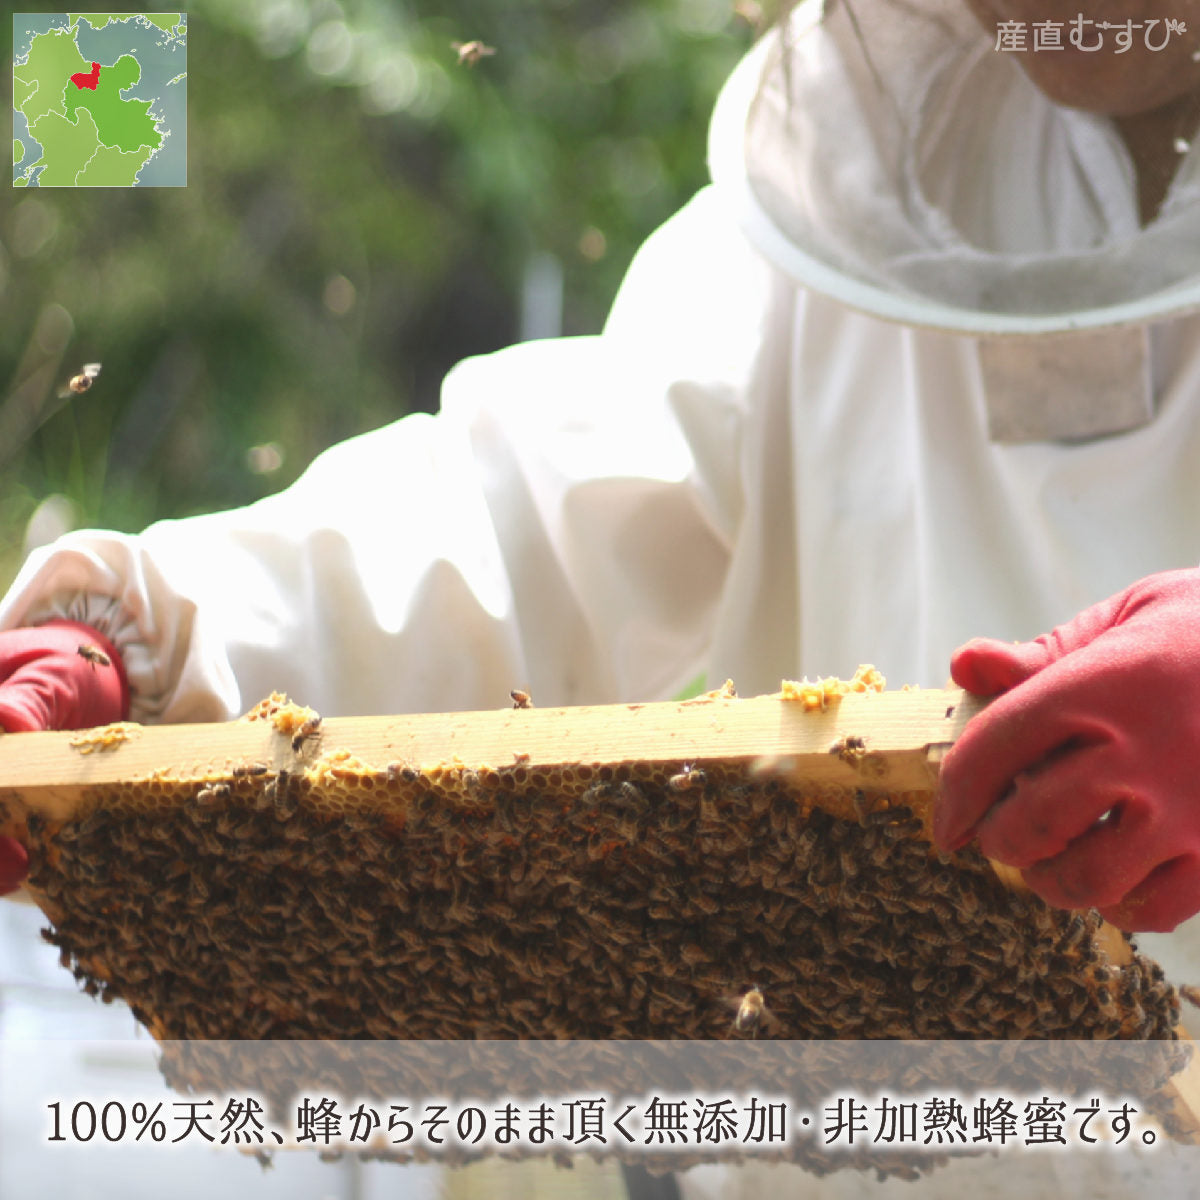 ミカン蜂蜜 糖度80度以上 無添加 非加熱 全原材料国産 天然 純粋蜂蜜